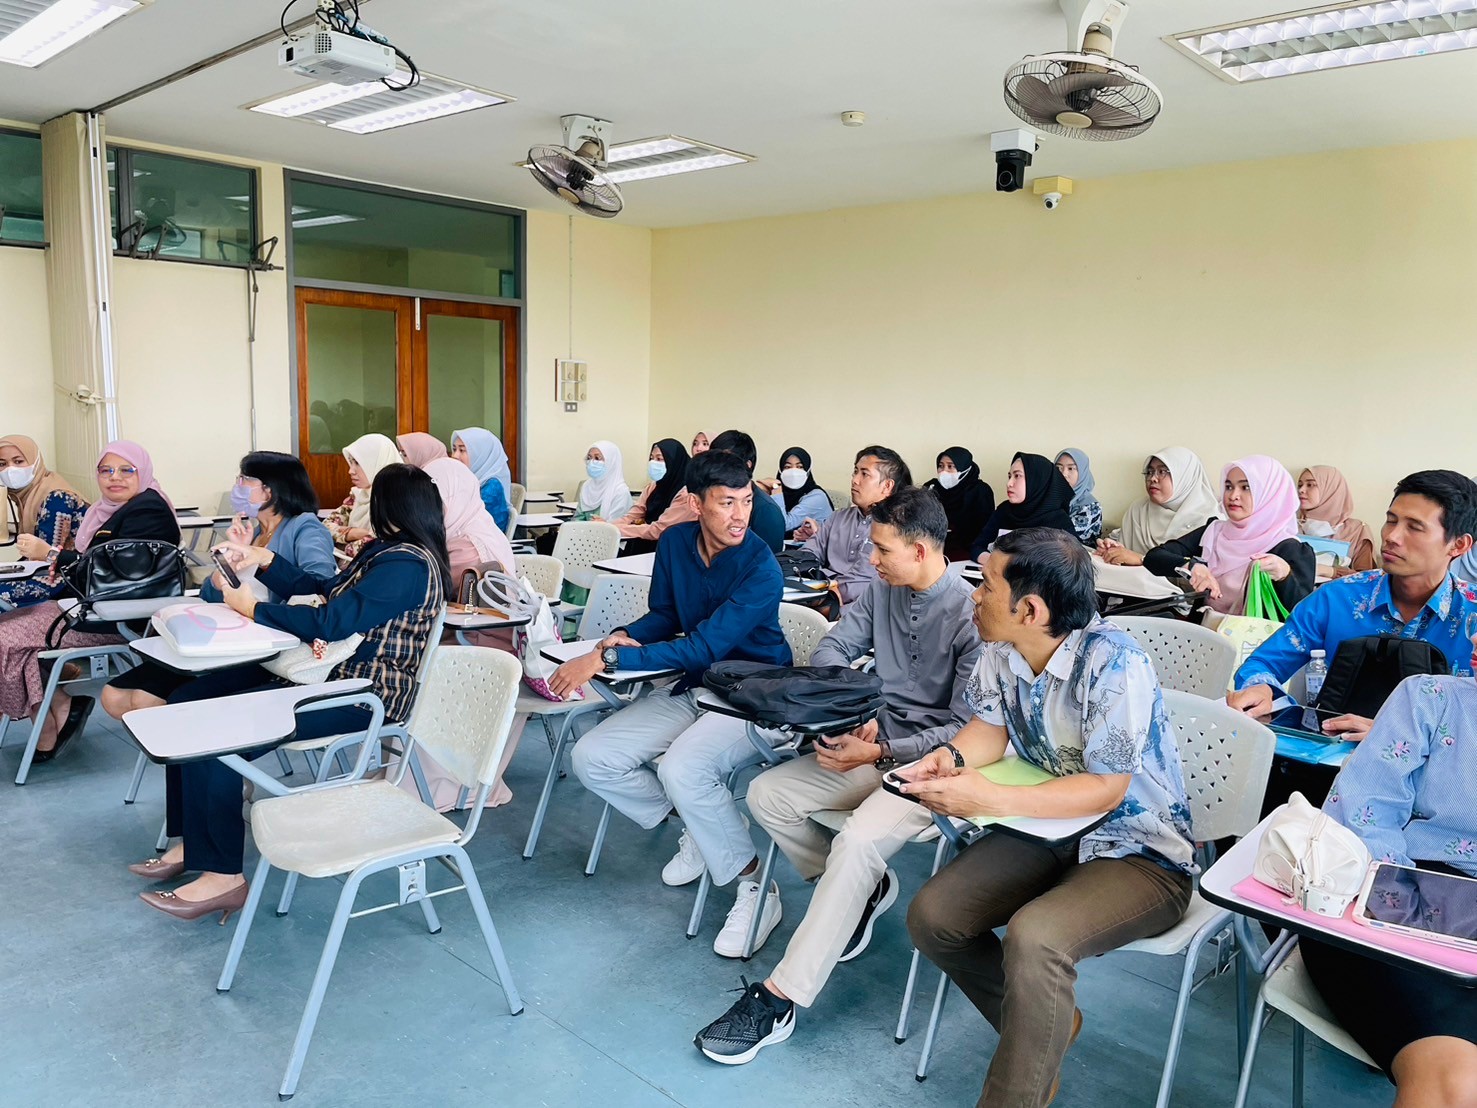 มหาวิยาลัยราชภัฏยะลา จัดสอบสัมภาษณ์และสอบข้อเขียนเพื่อคัดเลือกนักศึกษาระดับบัณฑิตศึกษา ประจำปีการศึกษา 2567